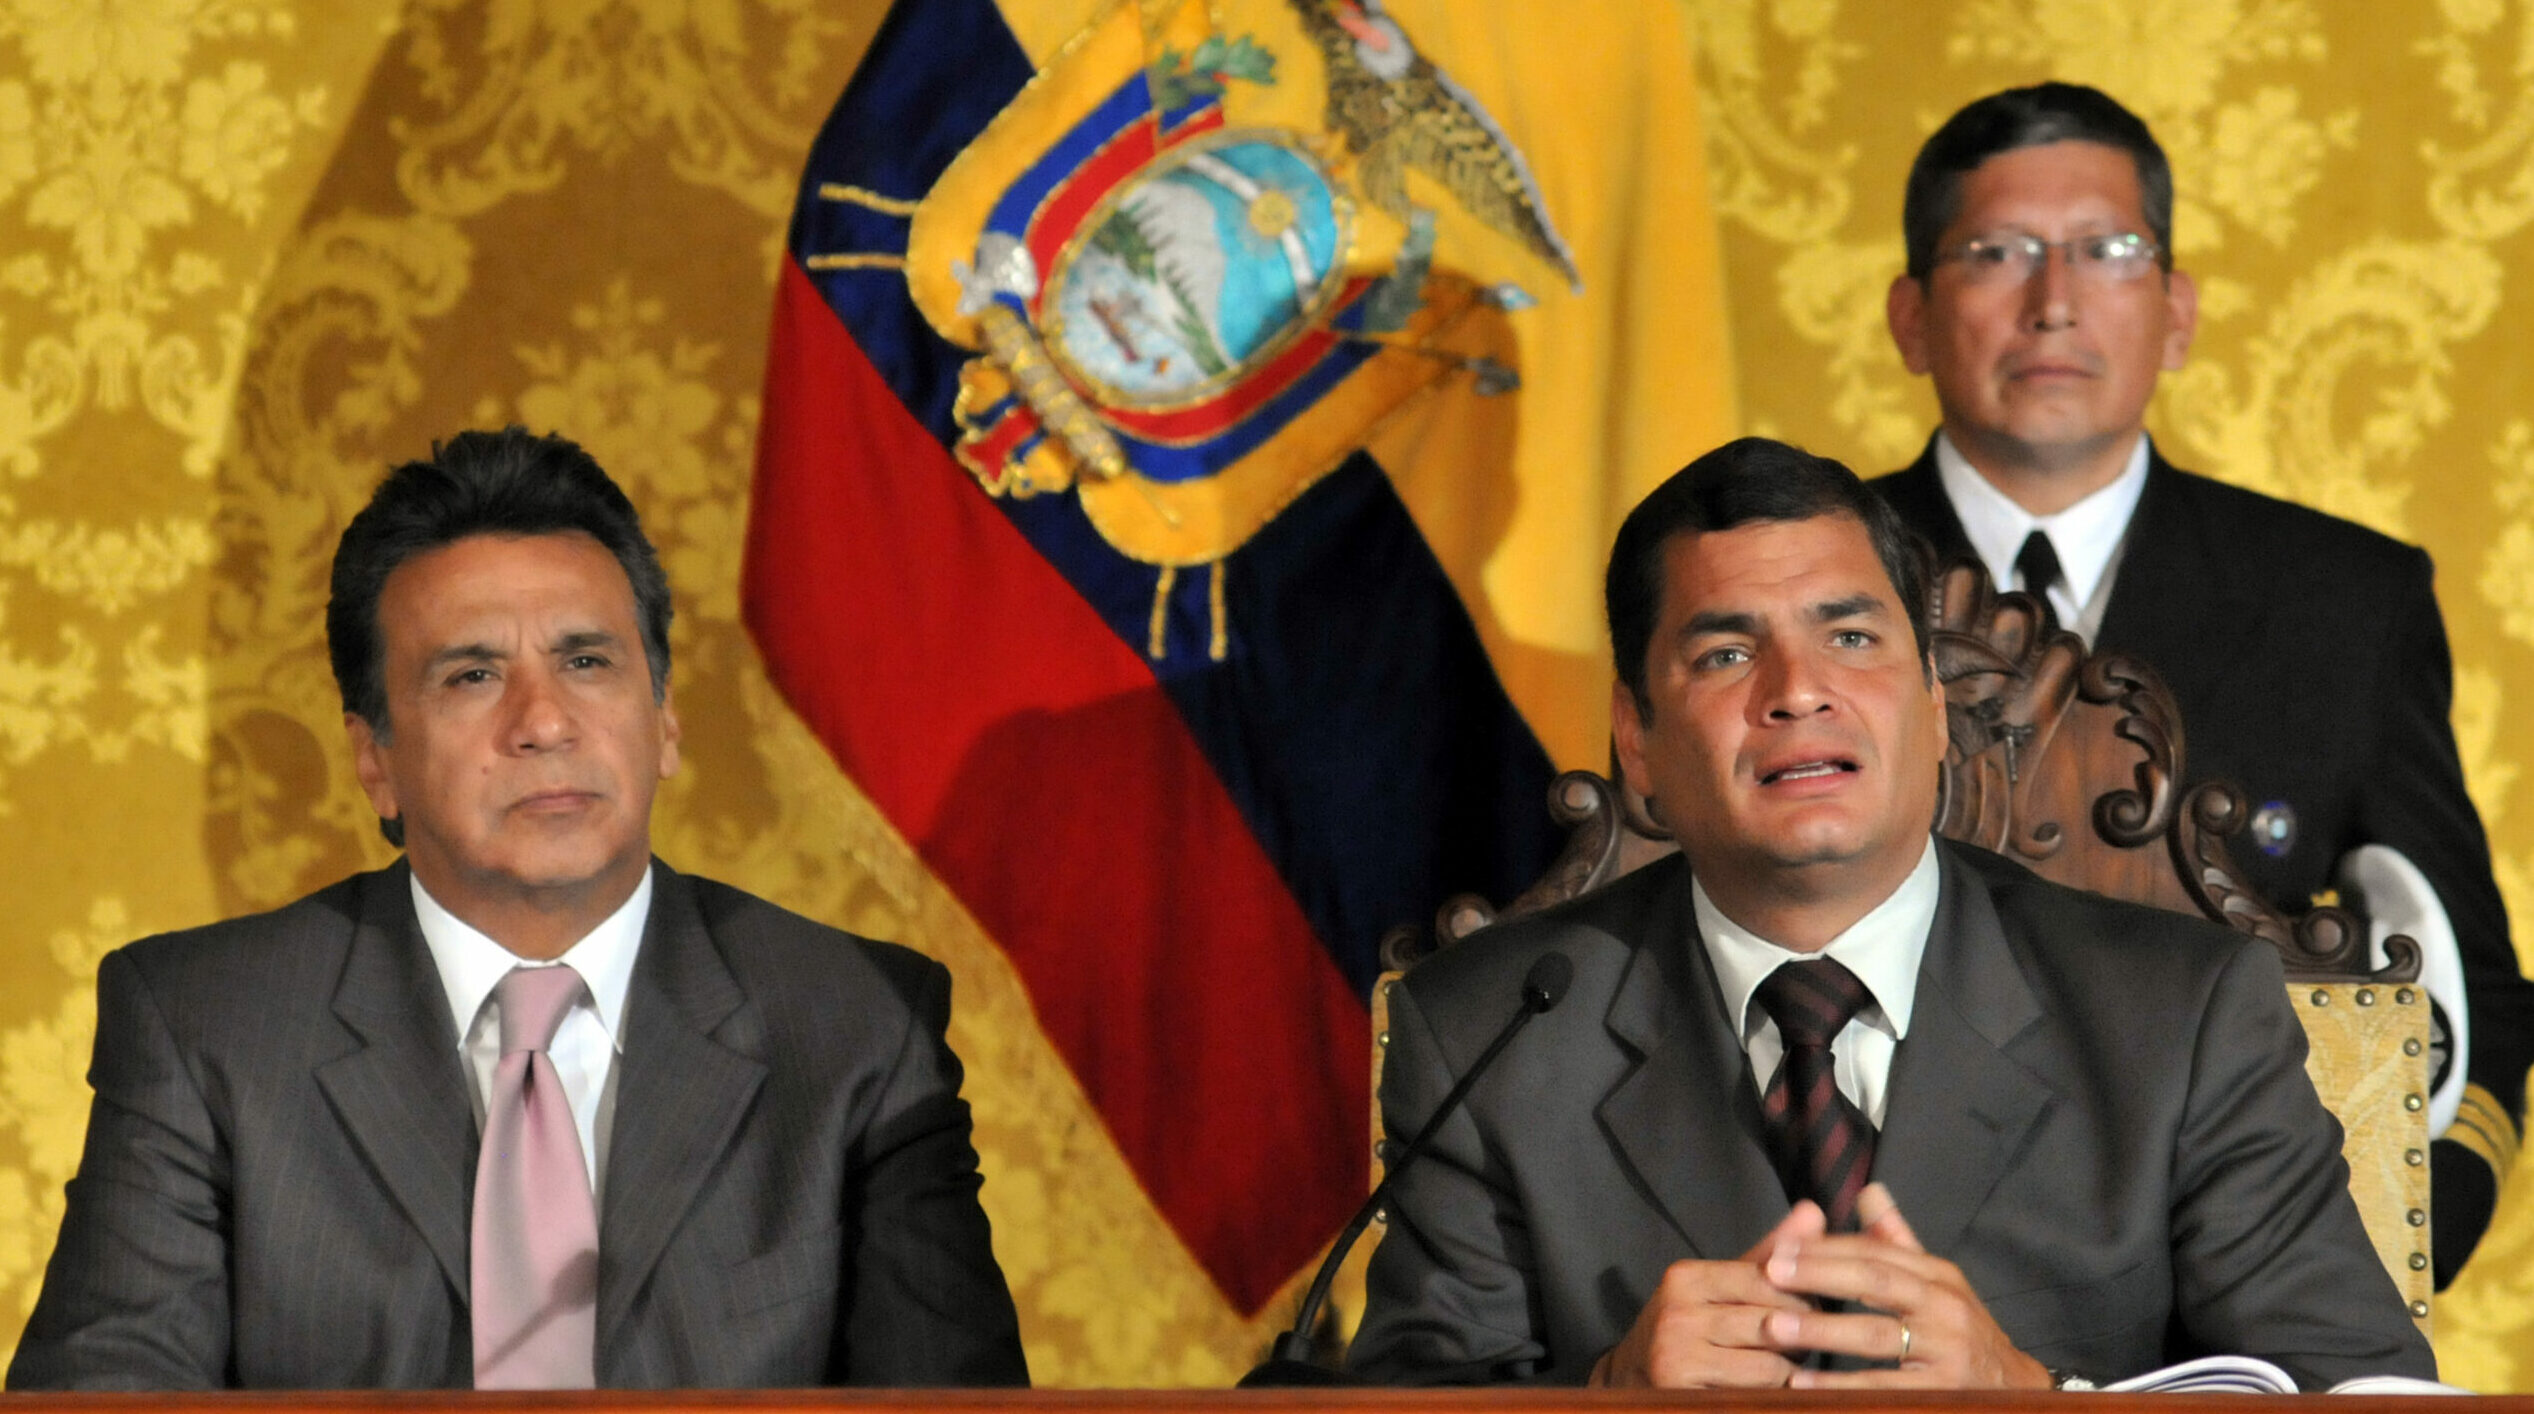 Rafael Correa fue llamado a rendir su versión dentro del caso Ina Papers, donde está procesado Lenín Moreno. Sin embargo, Correa no compareció a la versión. Foto: Flickr Presidencia Ecuador